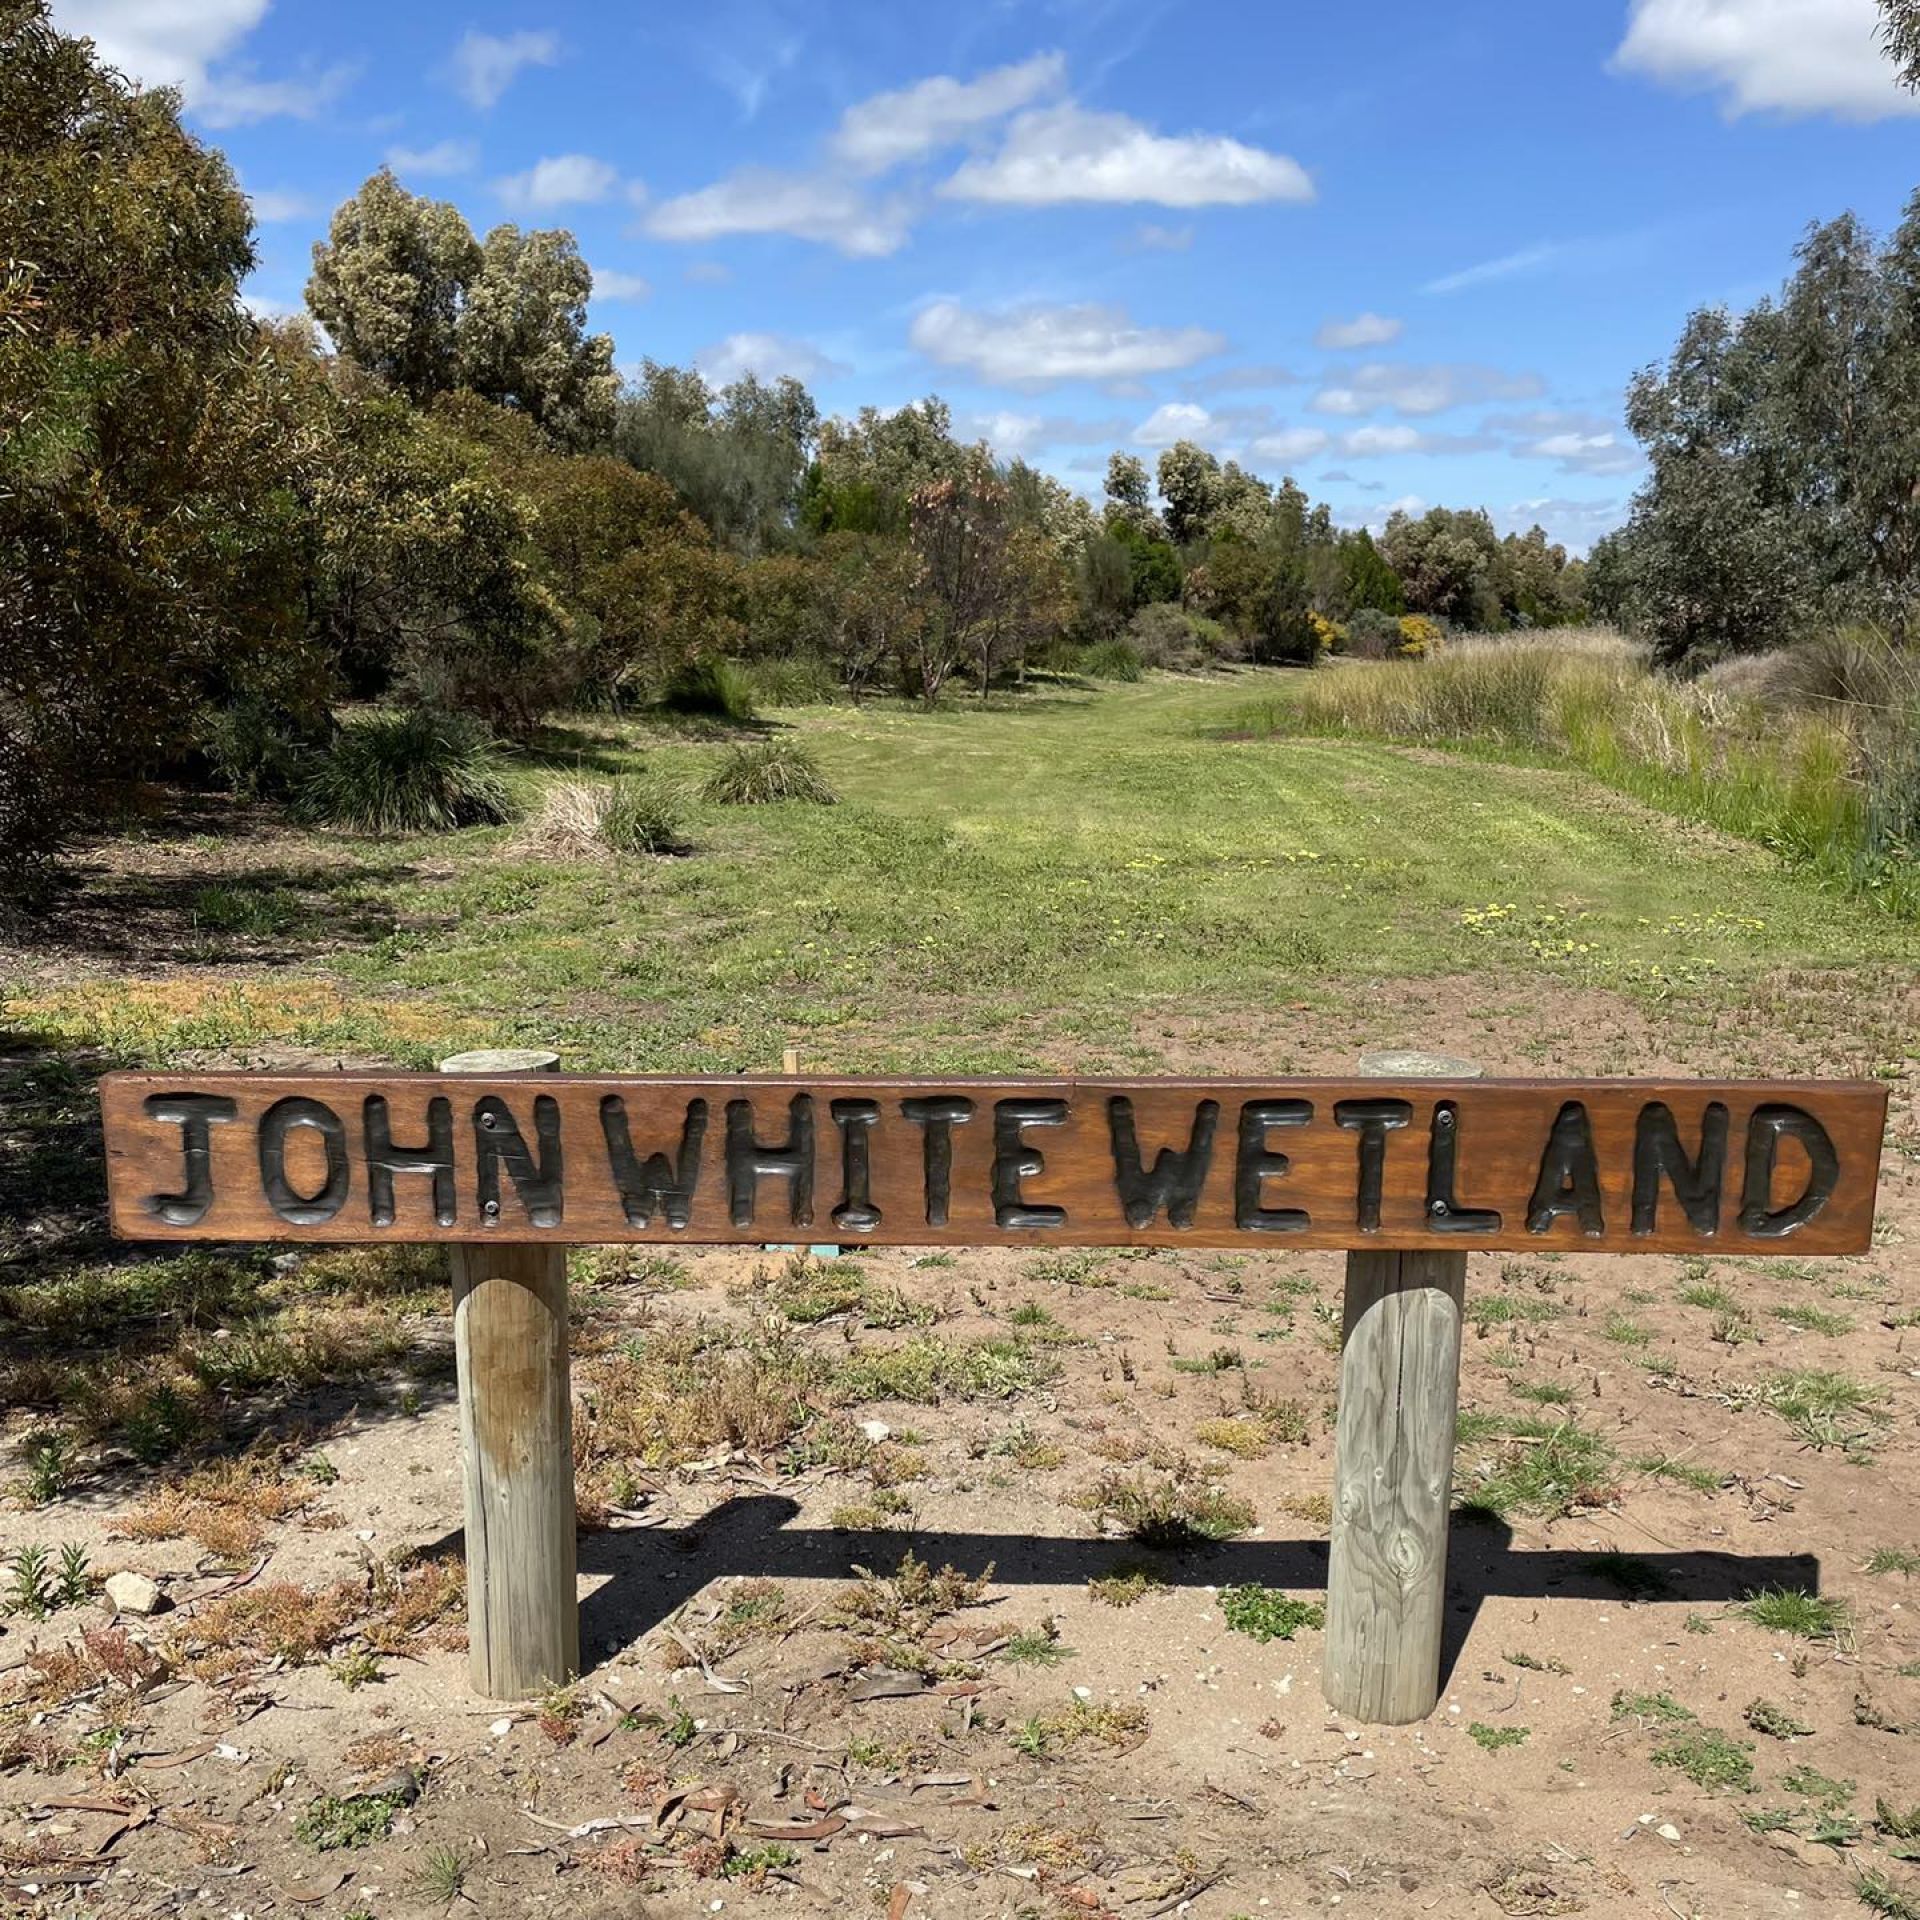 John White Wetland - newly varnished sign